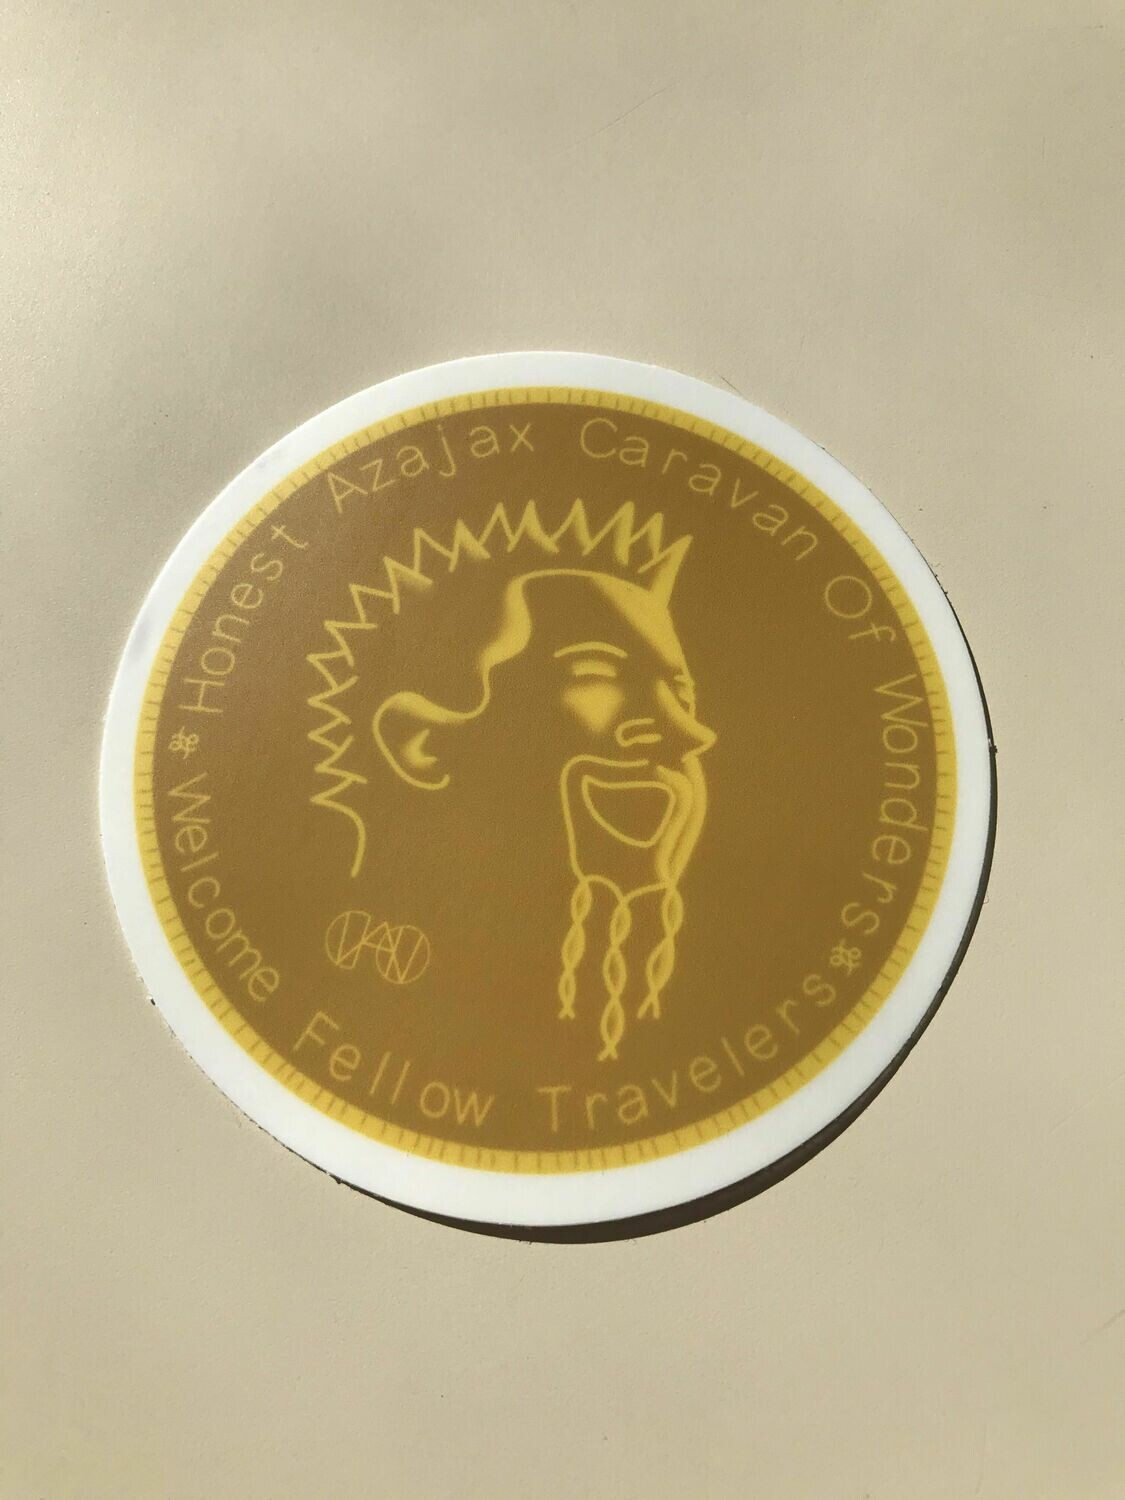 Honest Azajax Coin Sticker